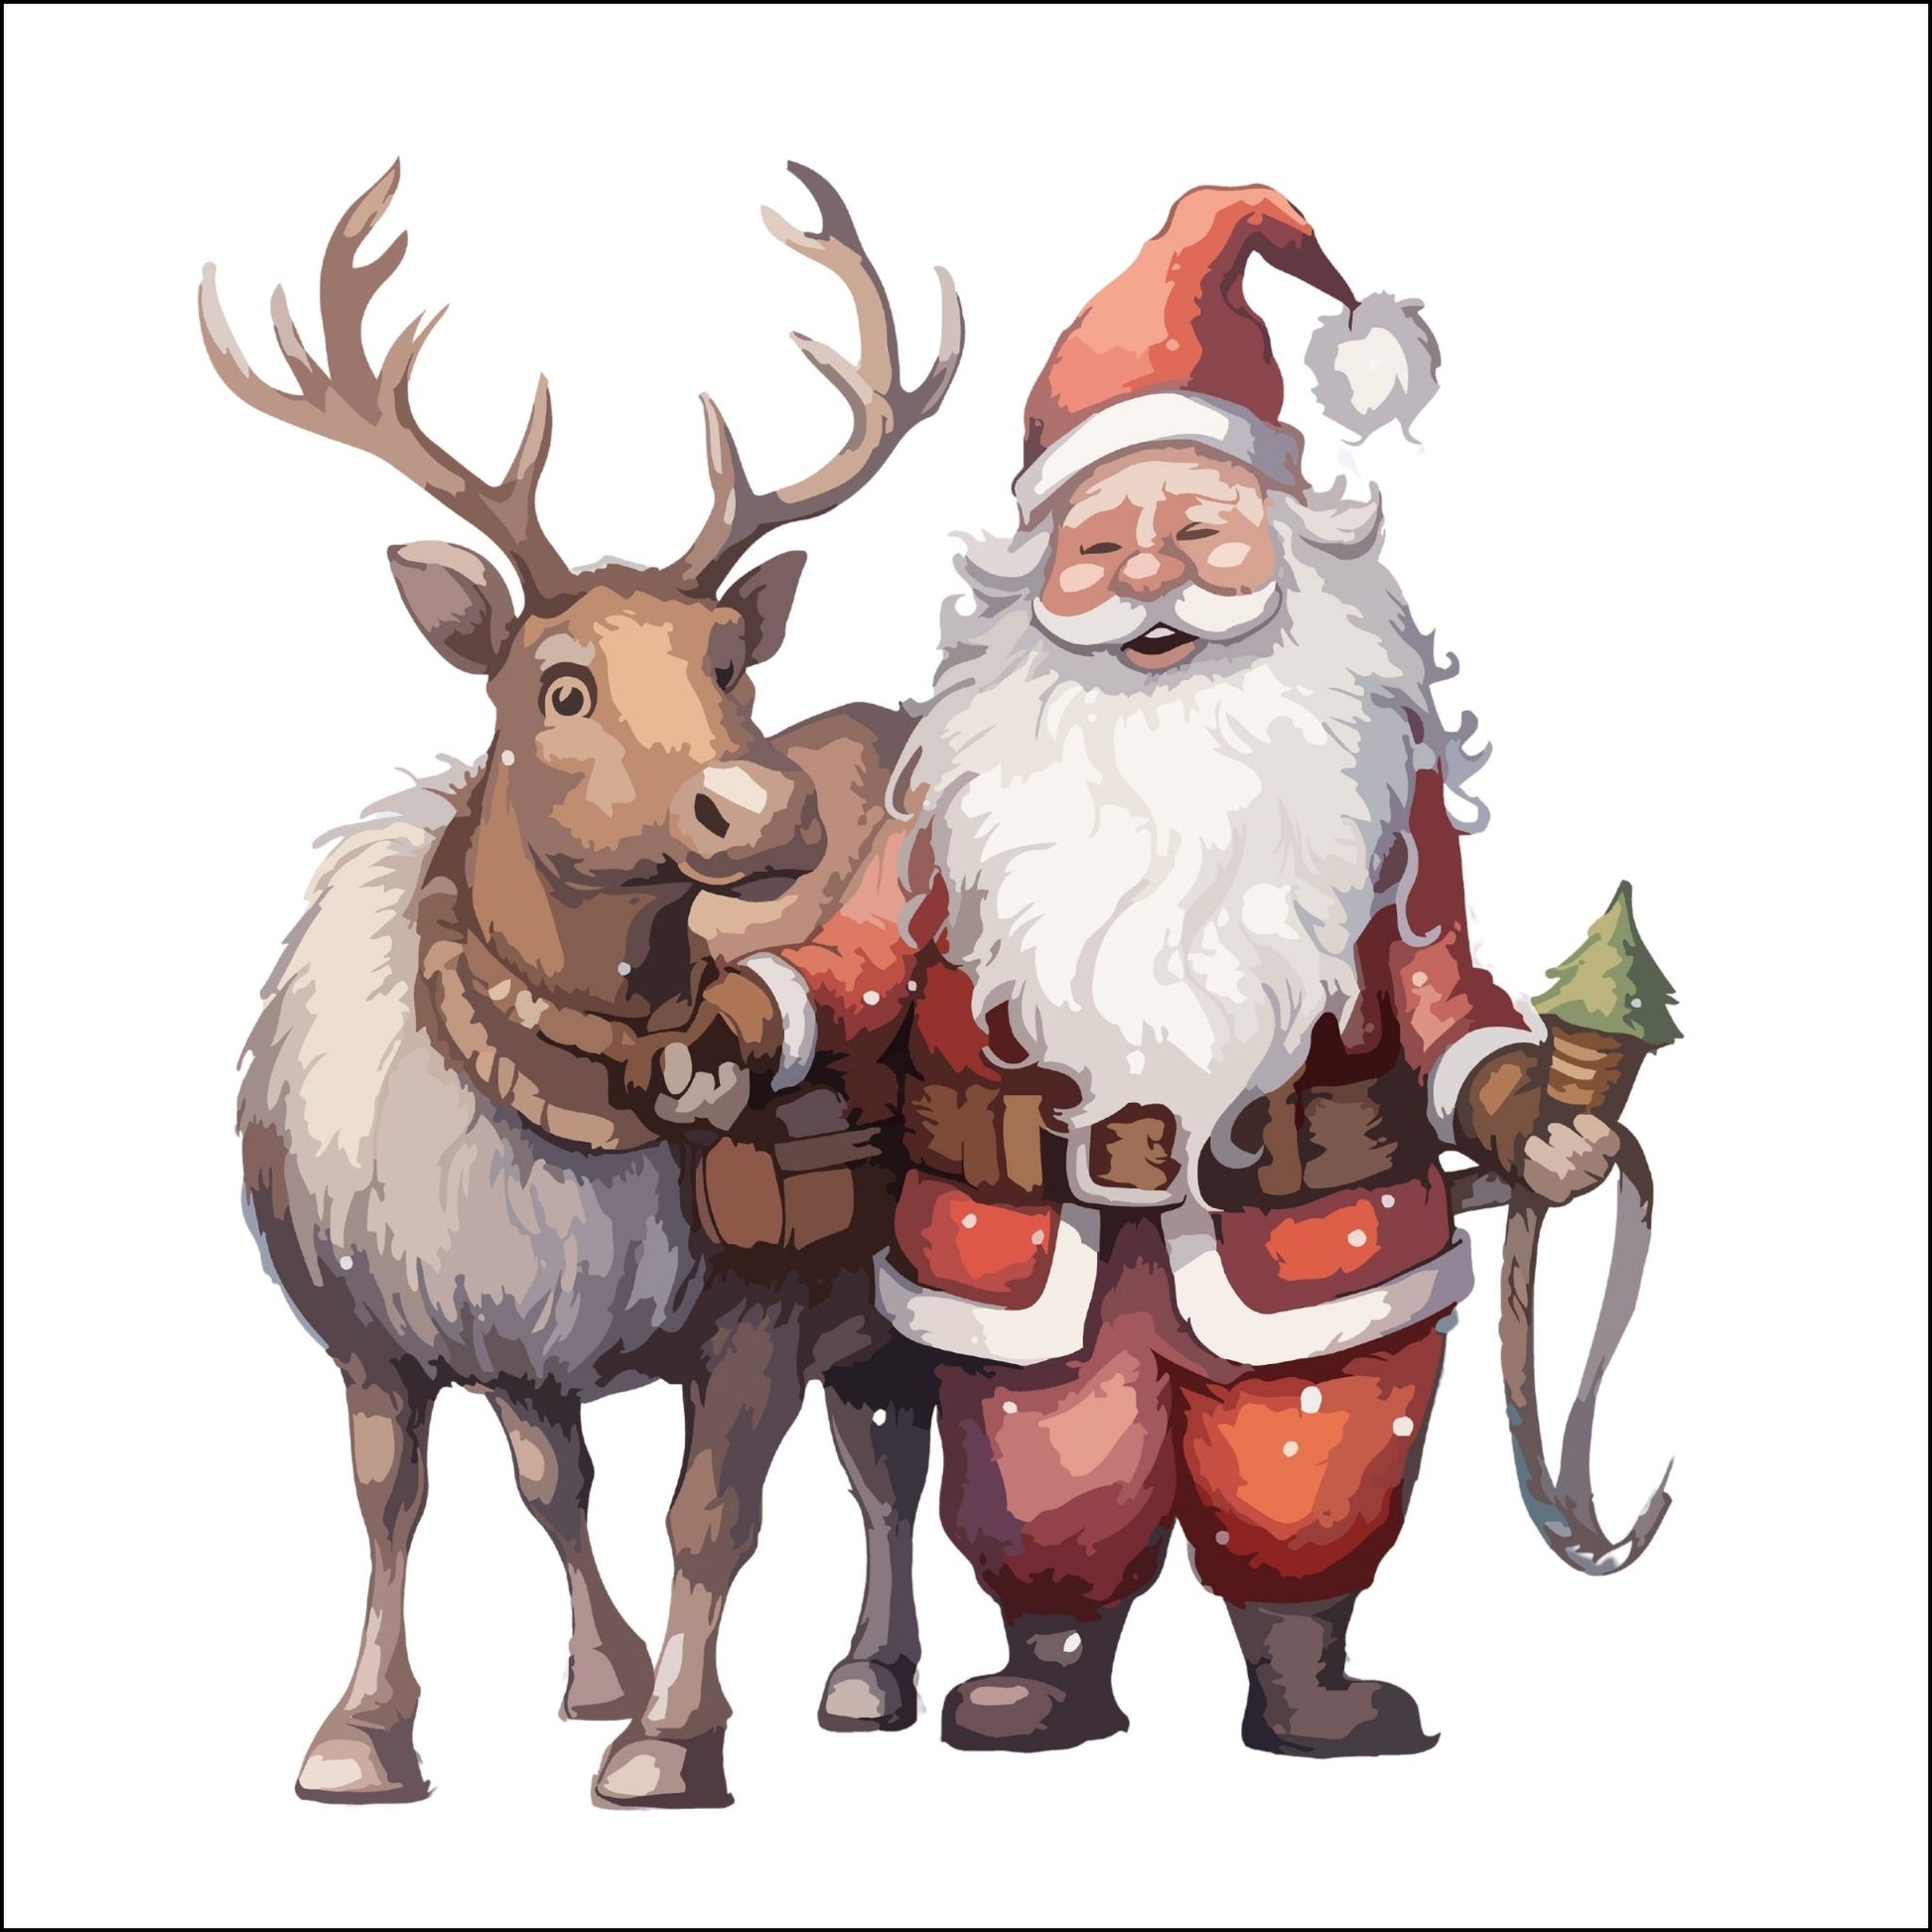 Dekorativt julemotiv av julenisse og reinsdyr.